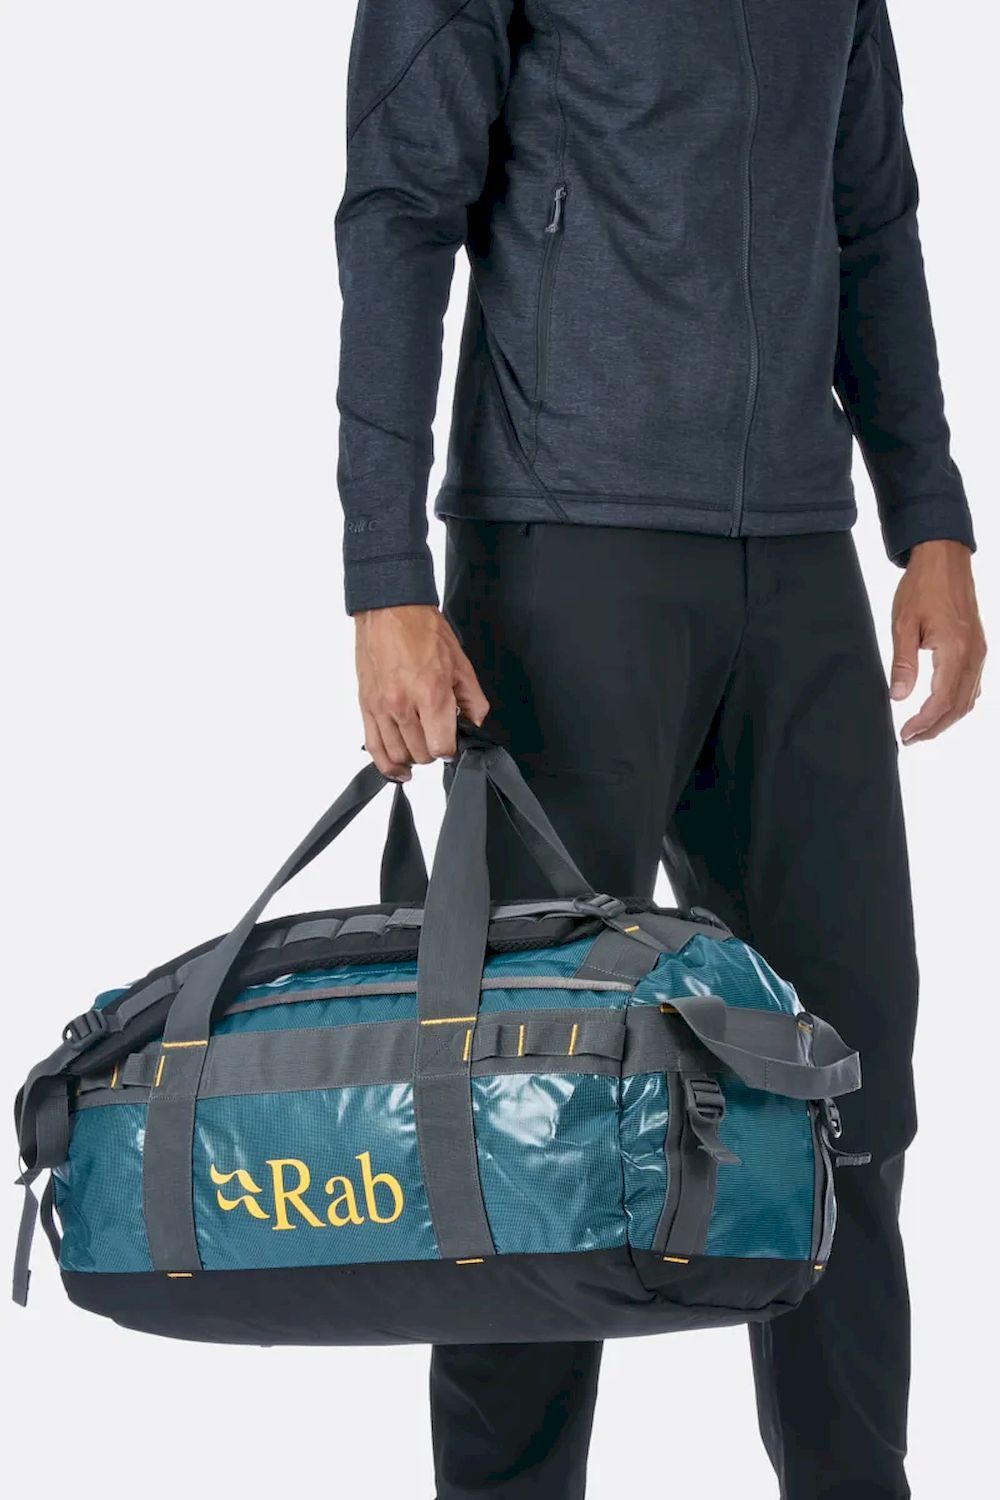 Rab Expedition Kitbag 50 - Zaino da viaggio - Uomo